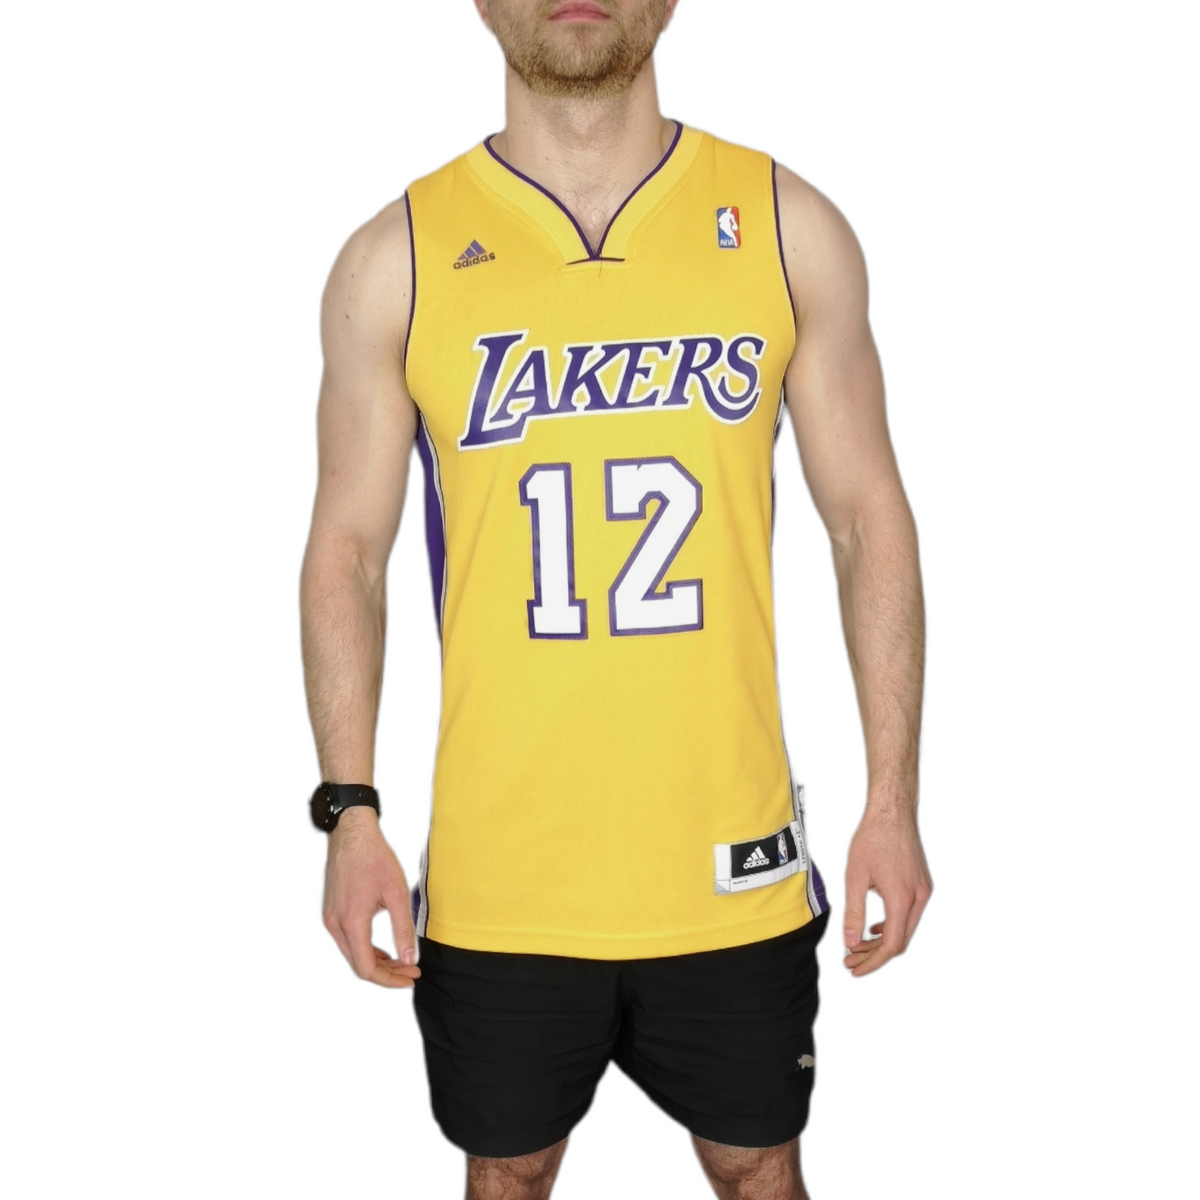 Adidas NBA LA Lakers 12 Dwight Howard Basketball Jersey - Size Small